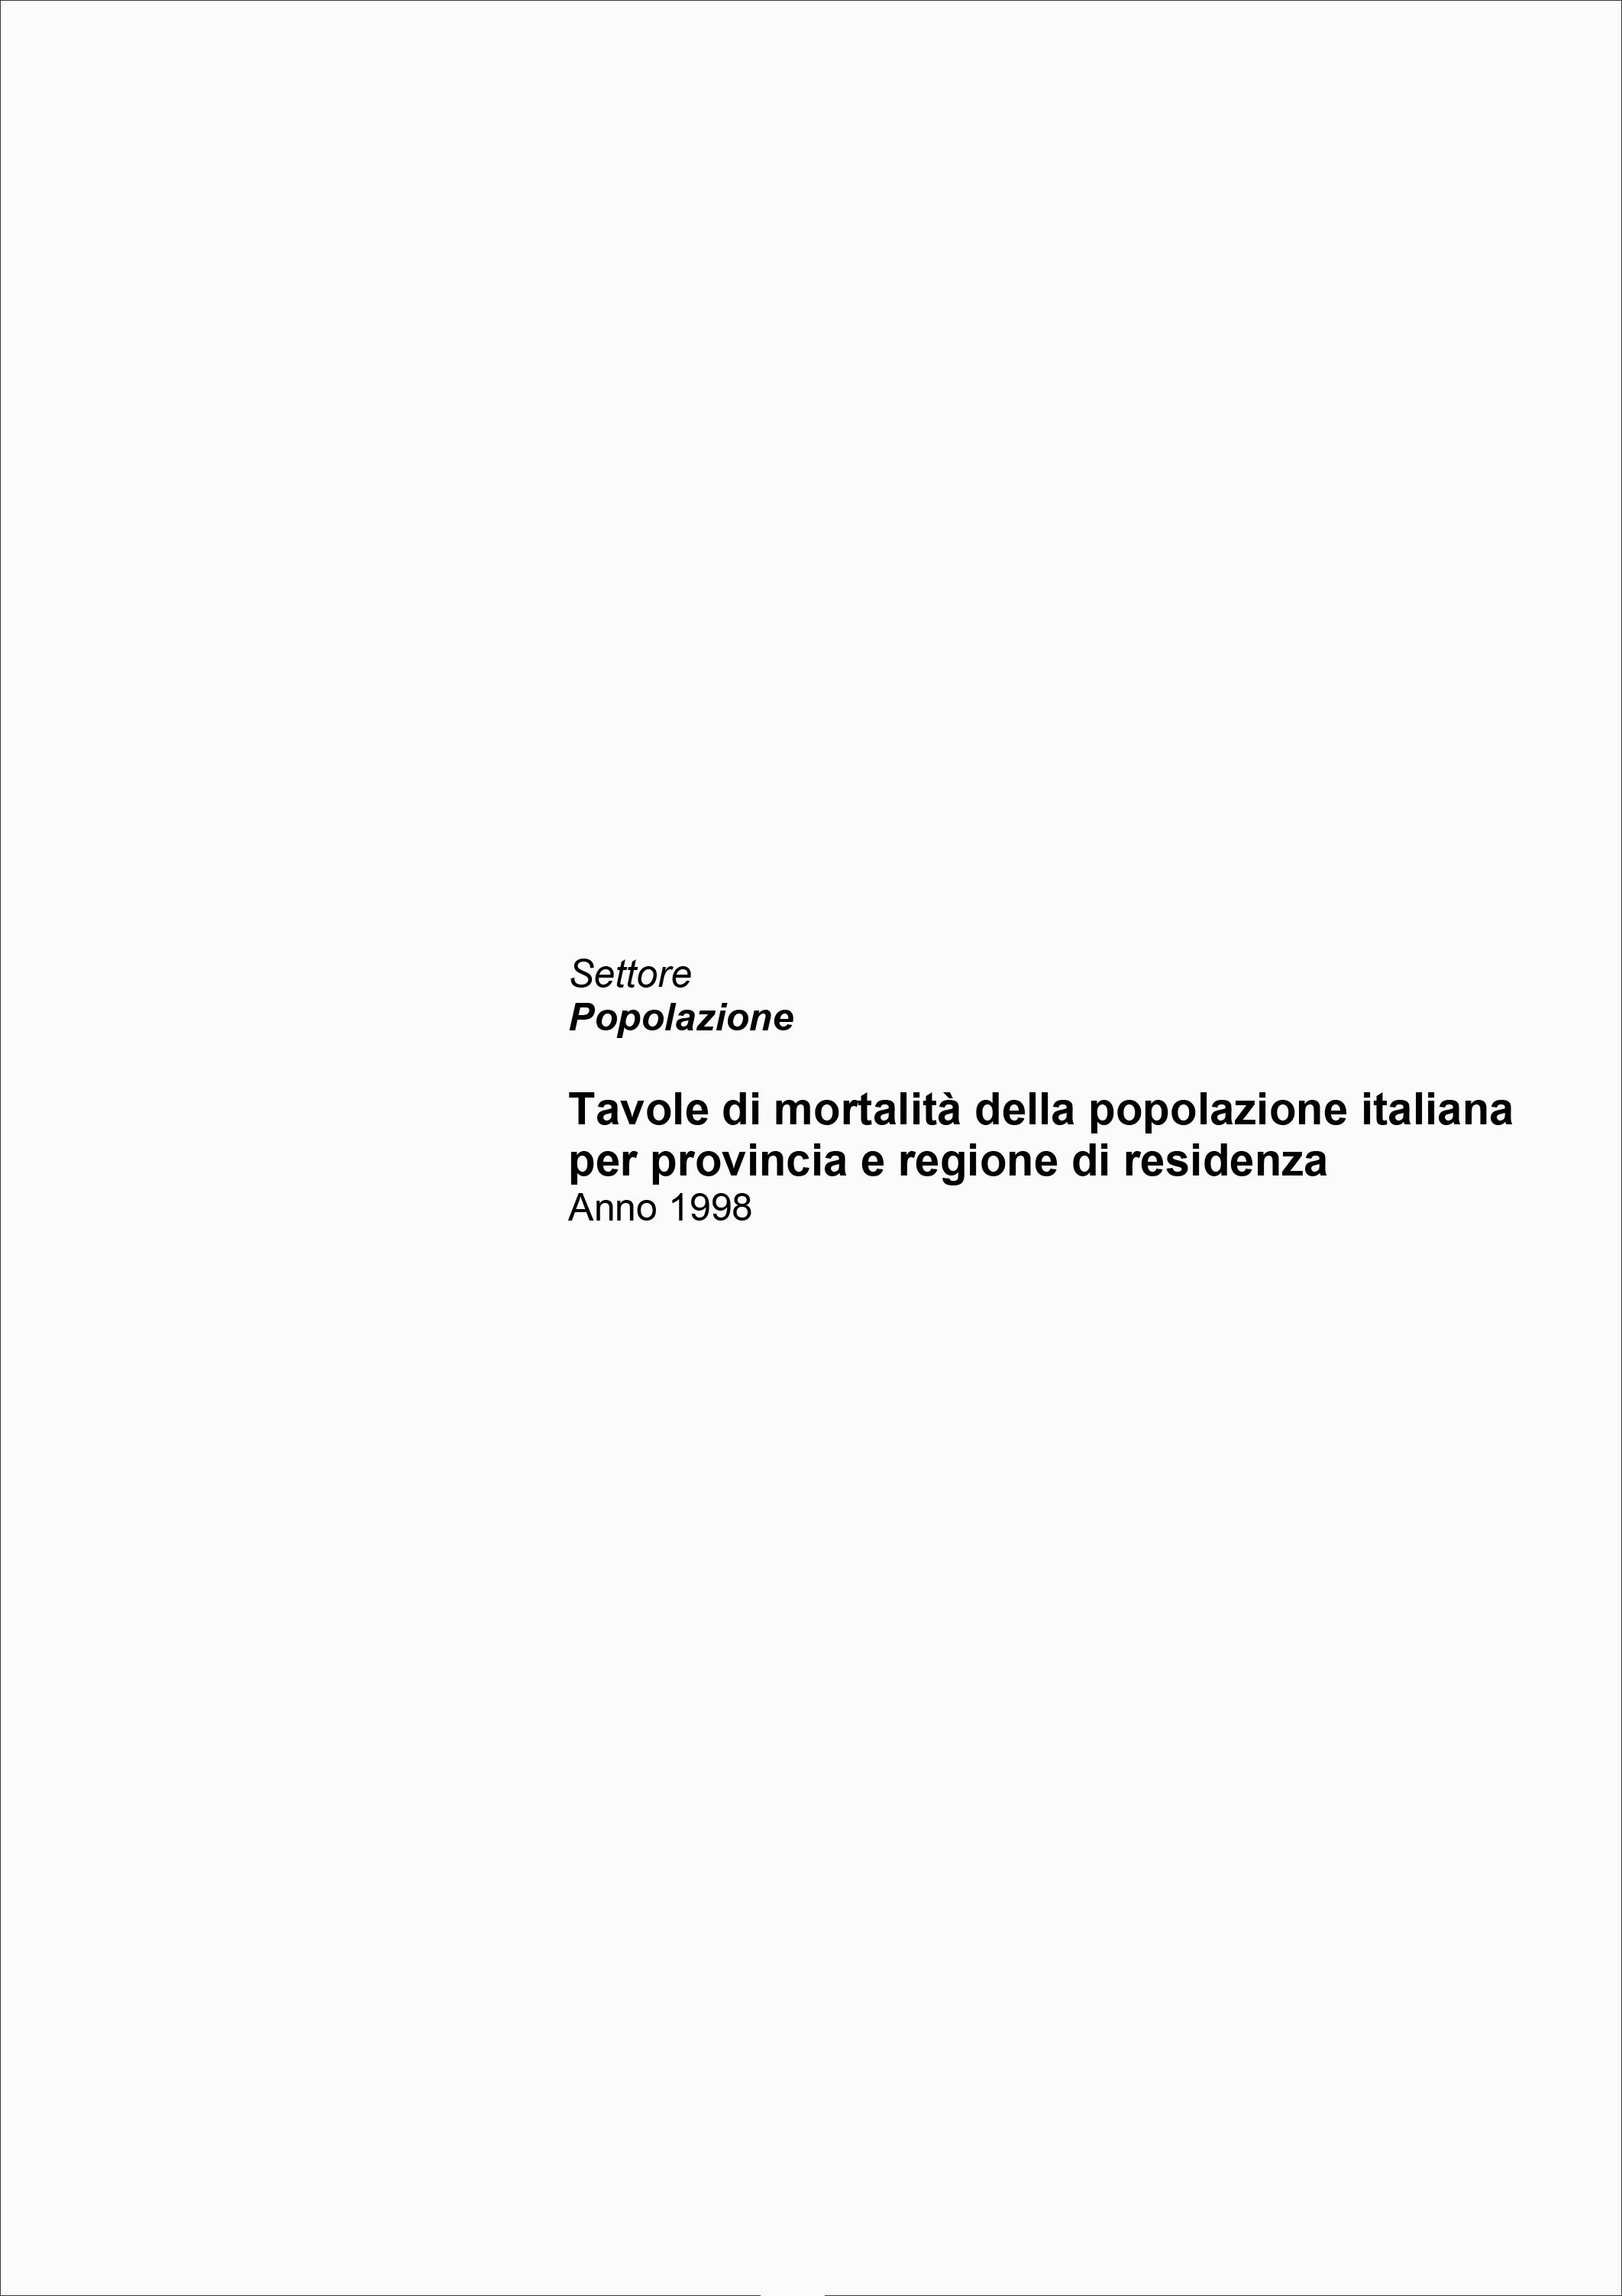 Tavole di mortalità della popolazione italiana per provincia e regione di residenza